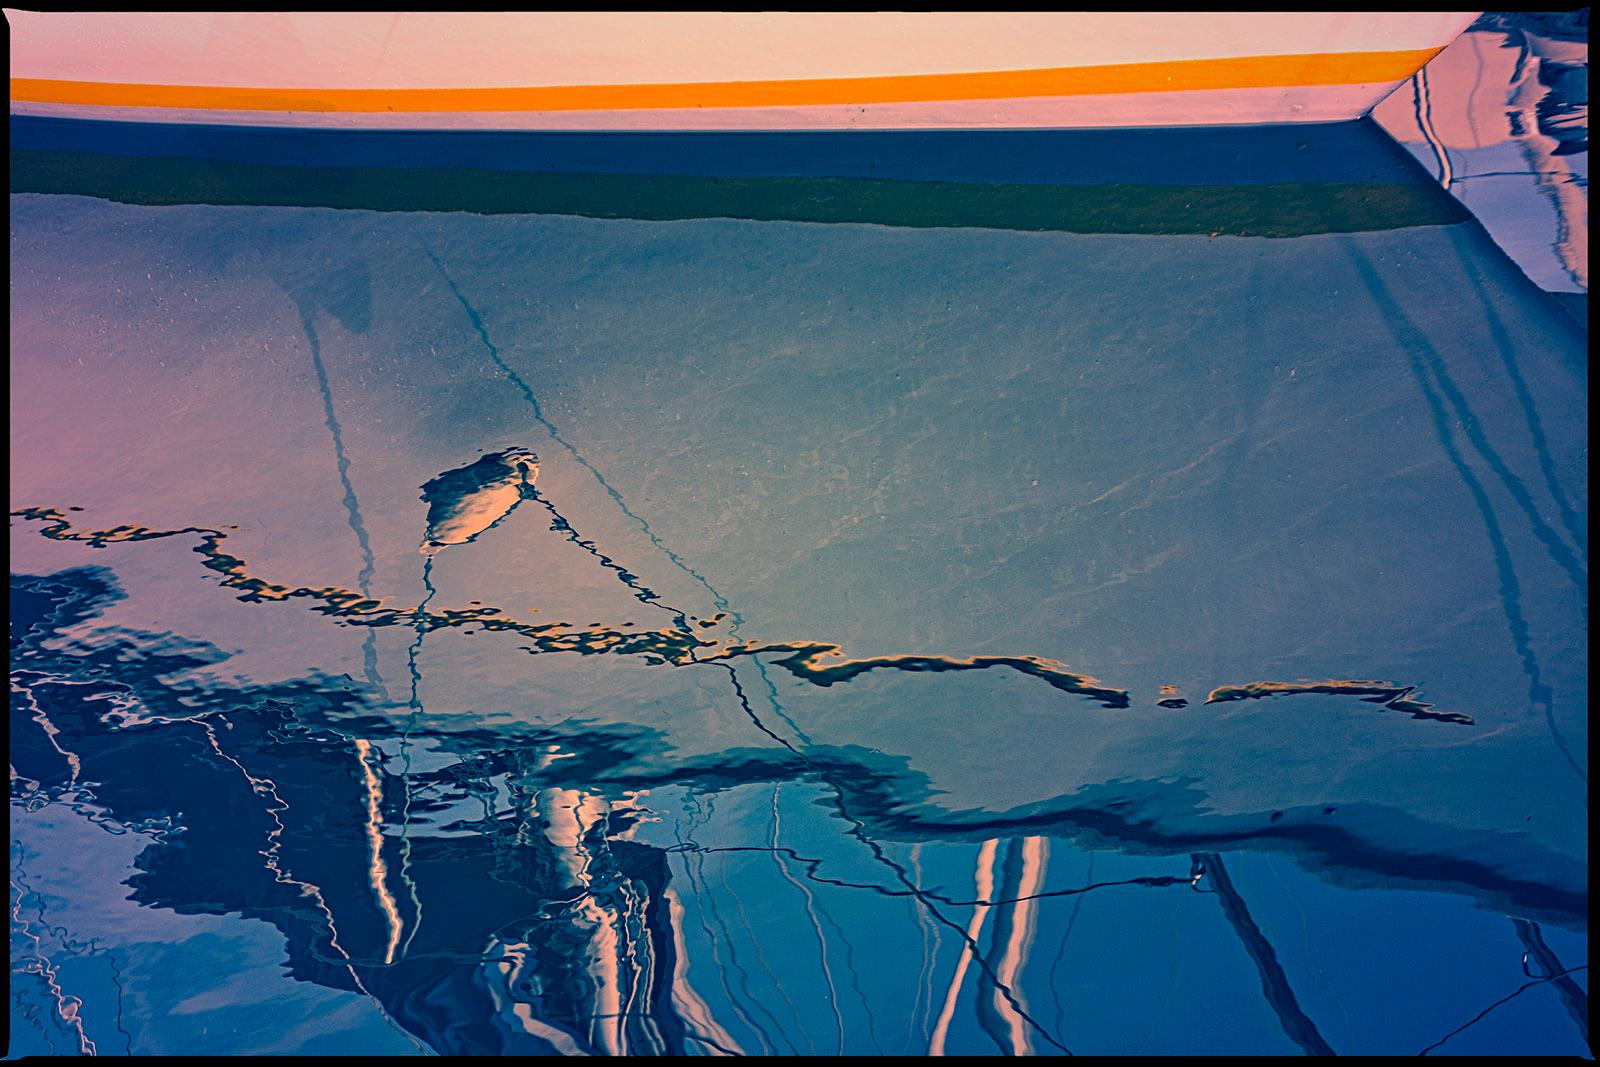 Color Photograph Michael Banks - 4 bateaux, impression d'art abstrait en édition limitée signé, grand format, bleu contemporain